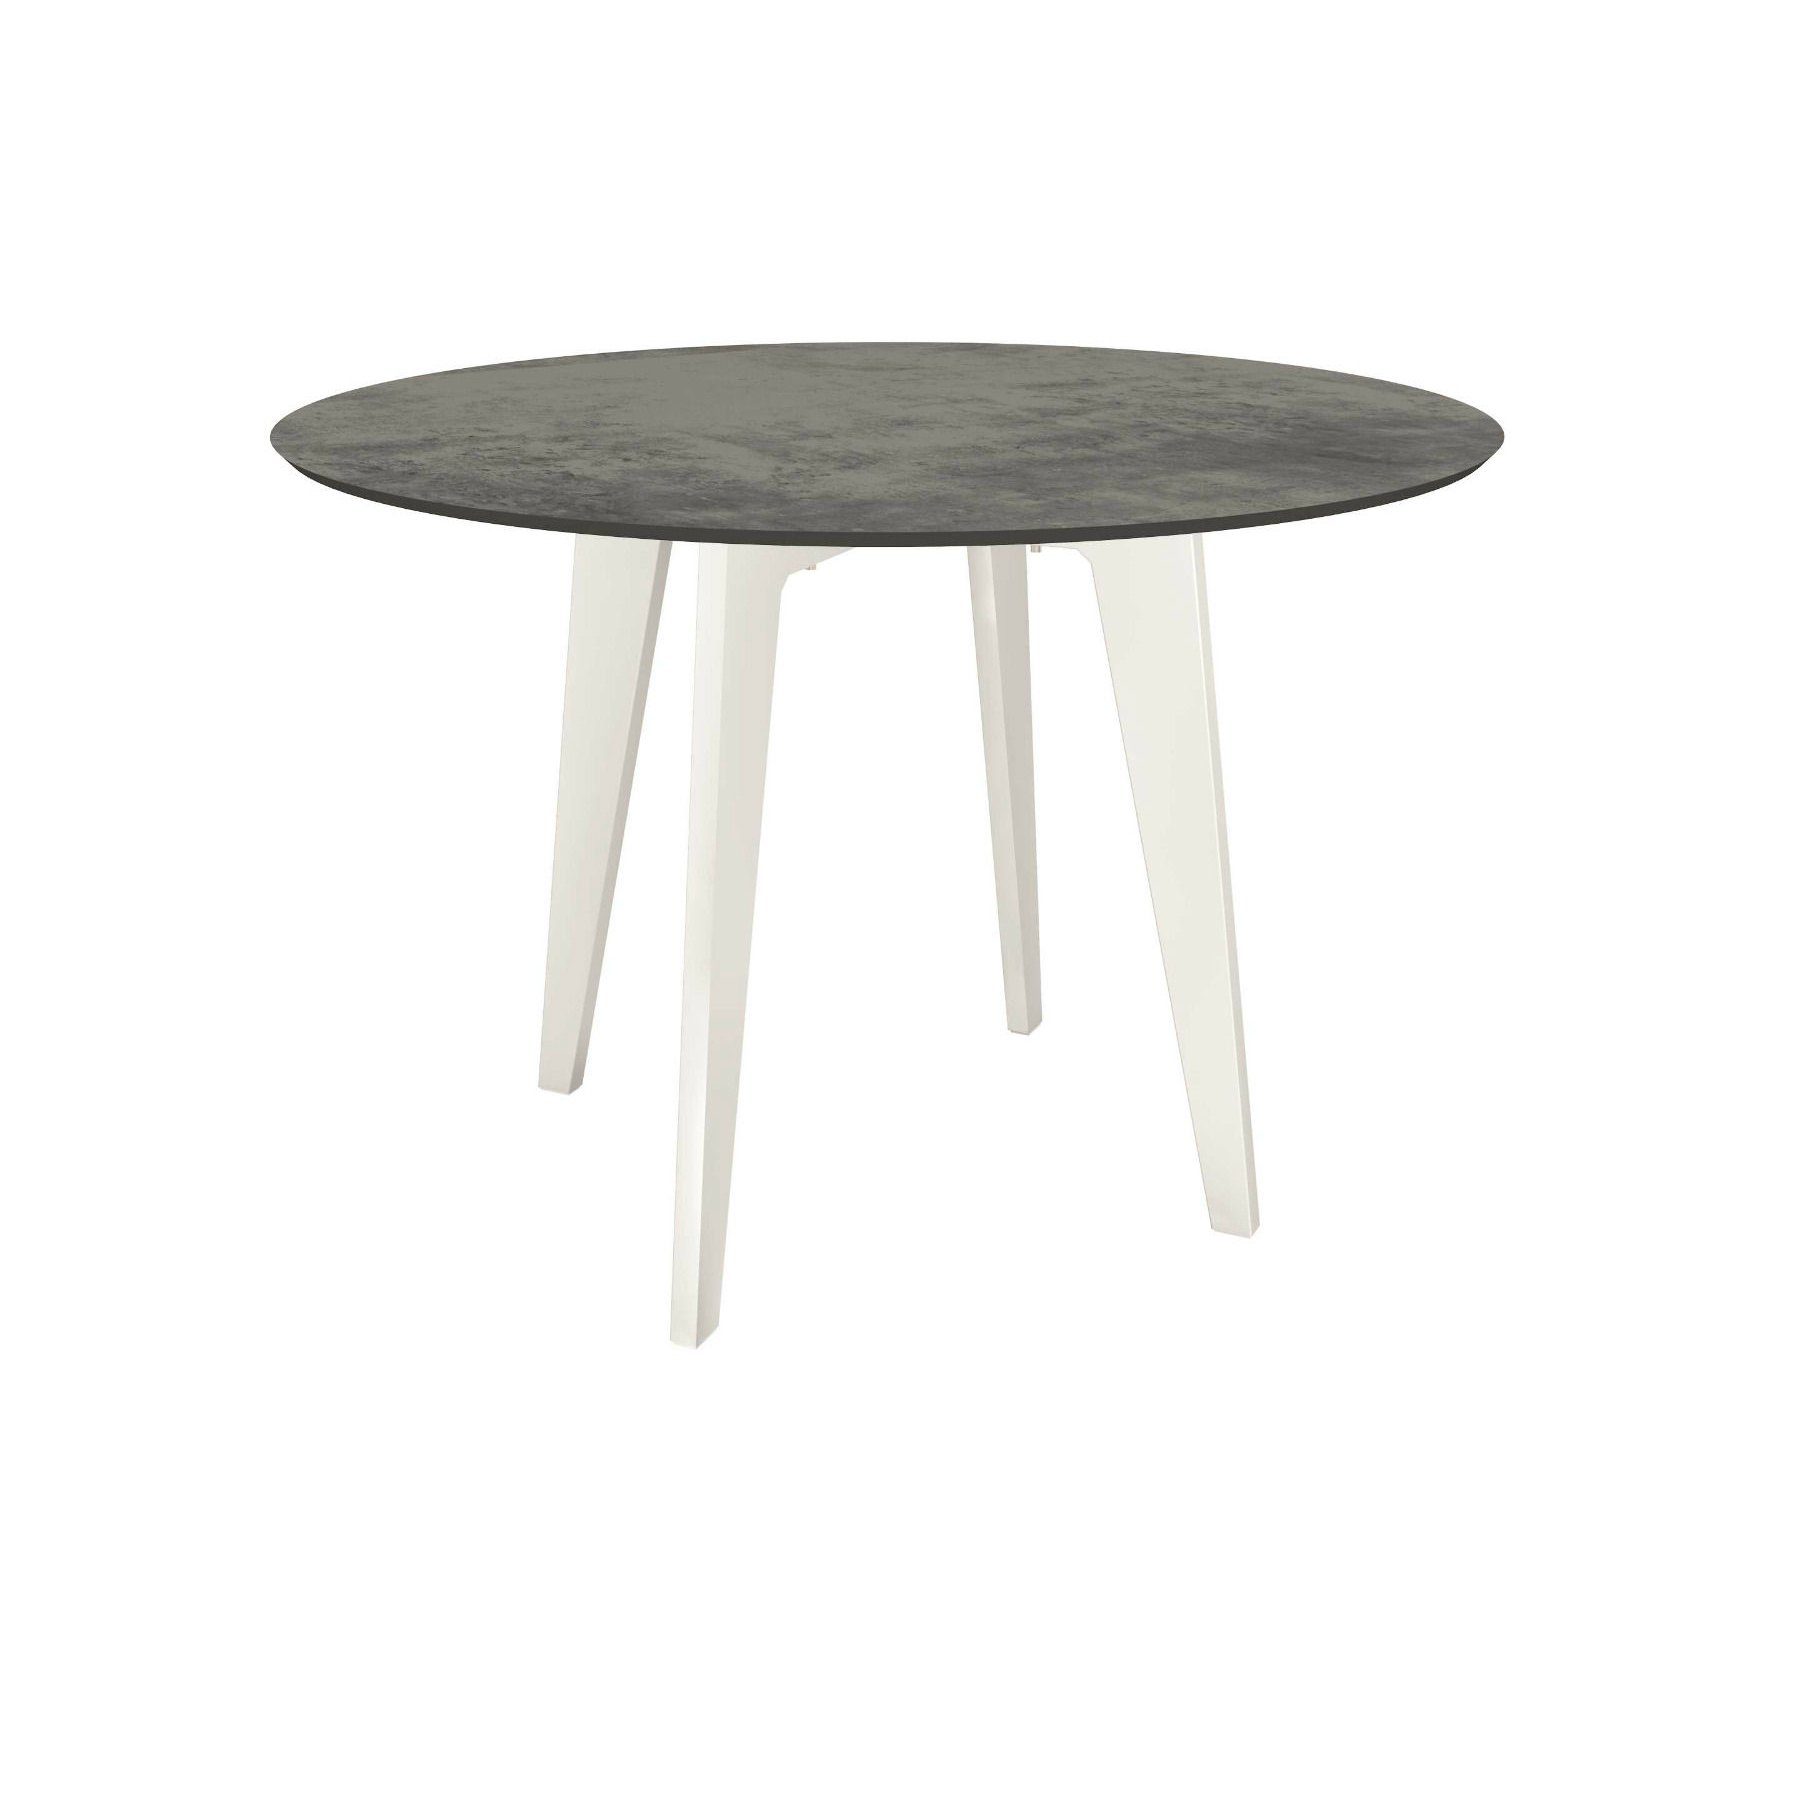 Stern Gartentisch rund 110cm oder 134cm, Aluminium weiß, Tischplatte HPL zement